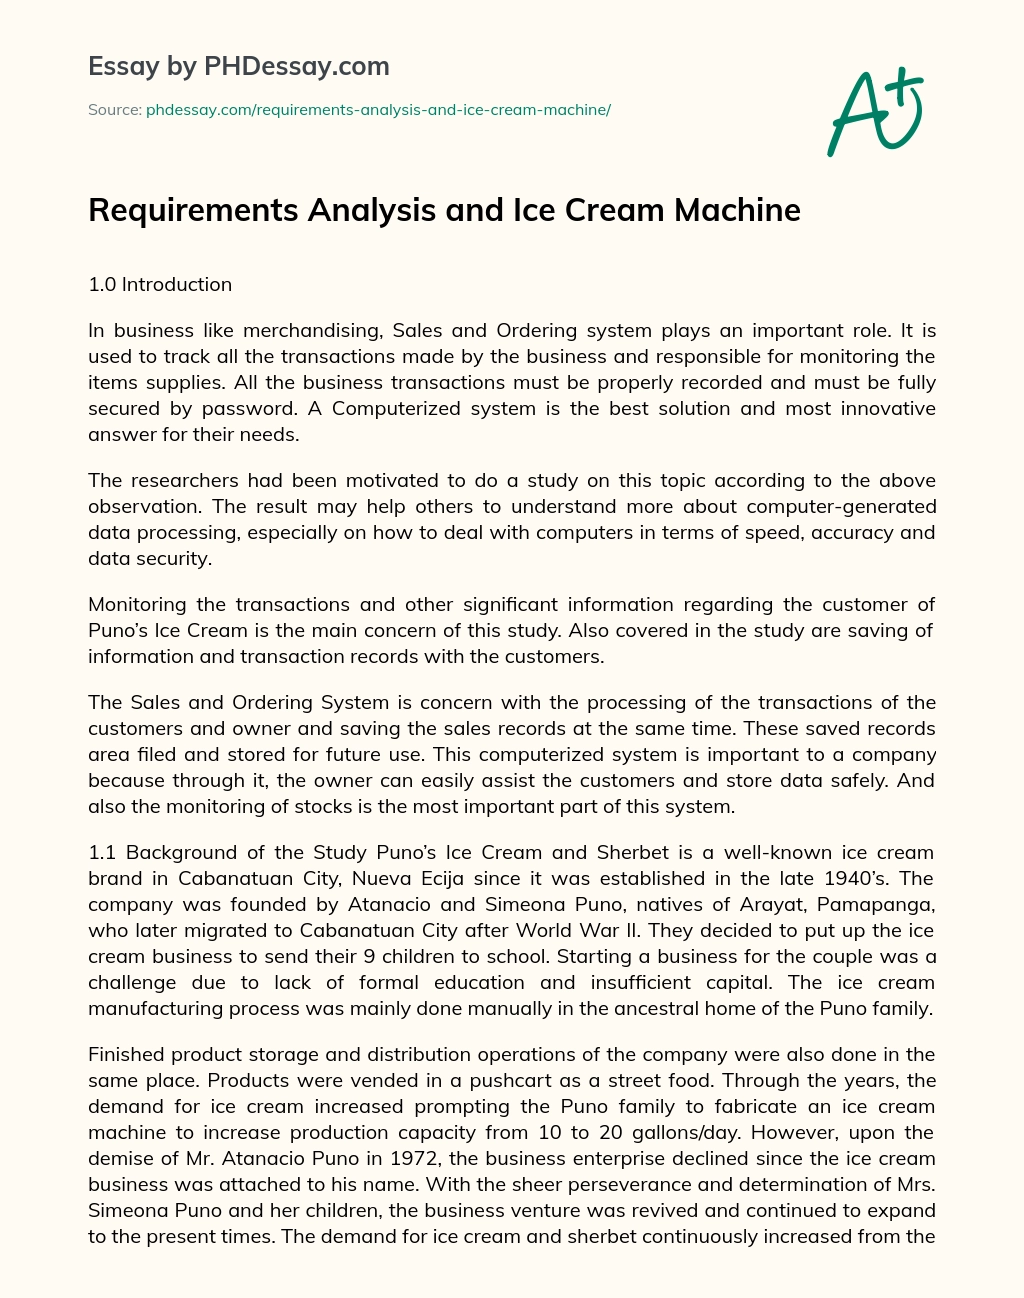 Requirements Analysis and Ice Cream Machine essay